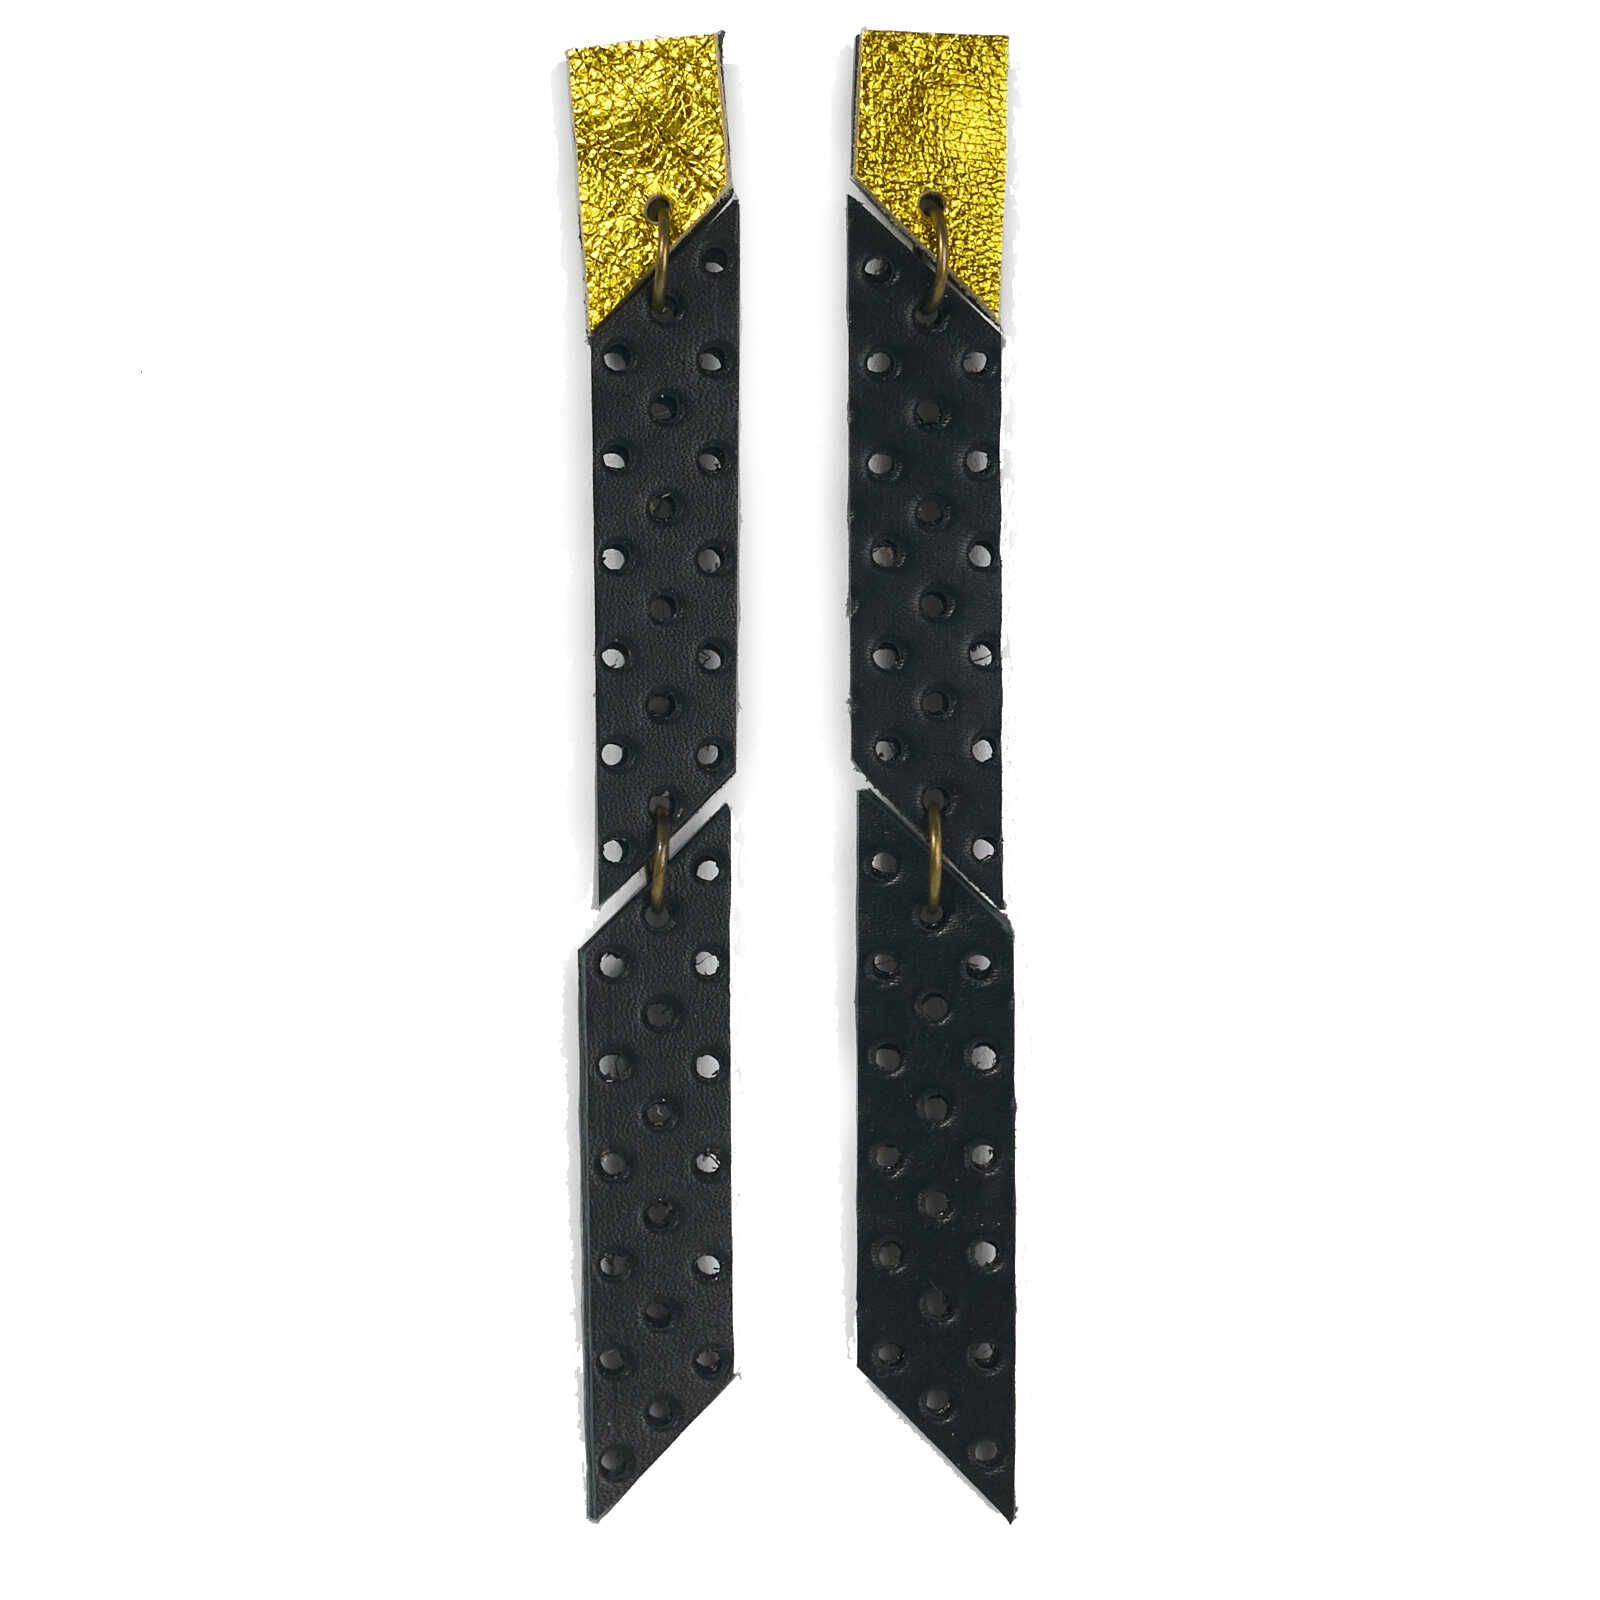 Ohrschmuck | Leder mit Lochstruktur | schwarz & gelb metallic